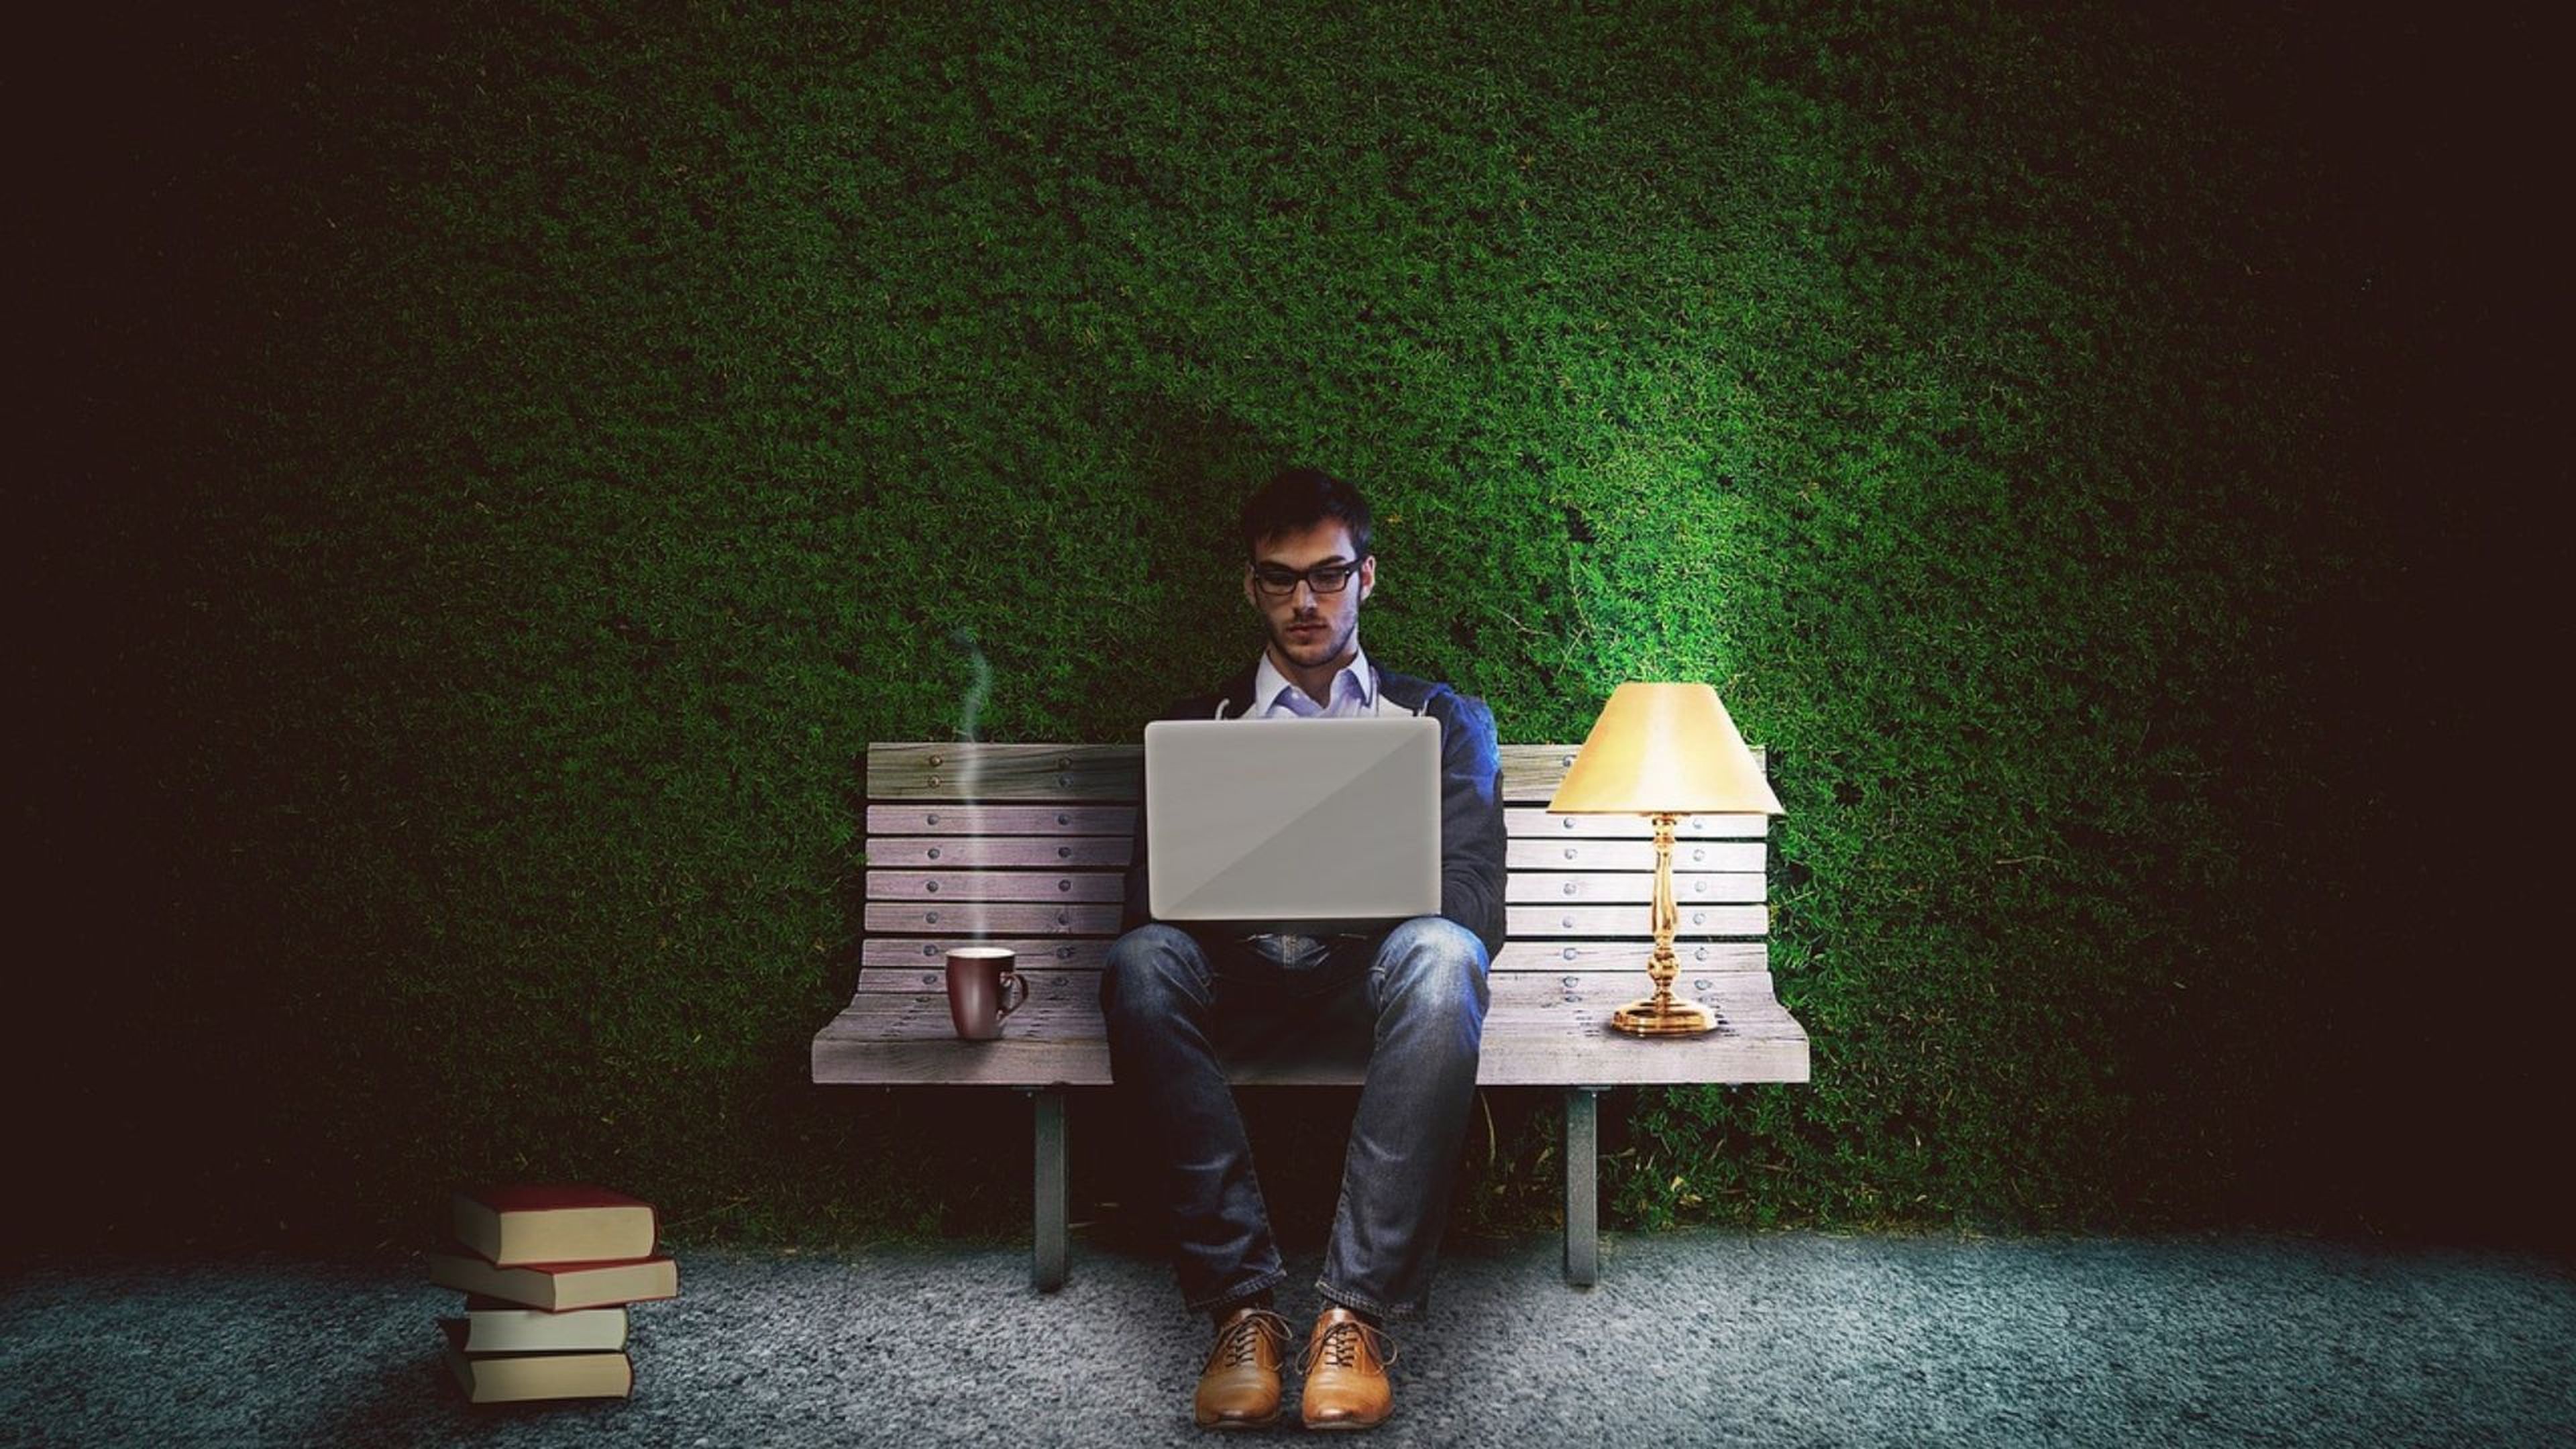 Ilustración con un señor sentado en un banco en la calle con un ordenador, un flexo y una taza de café.